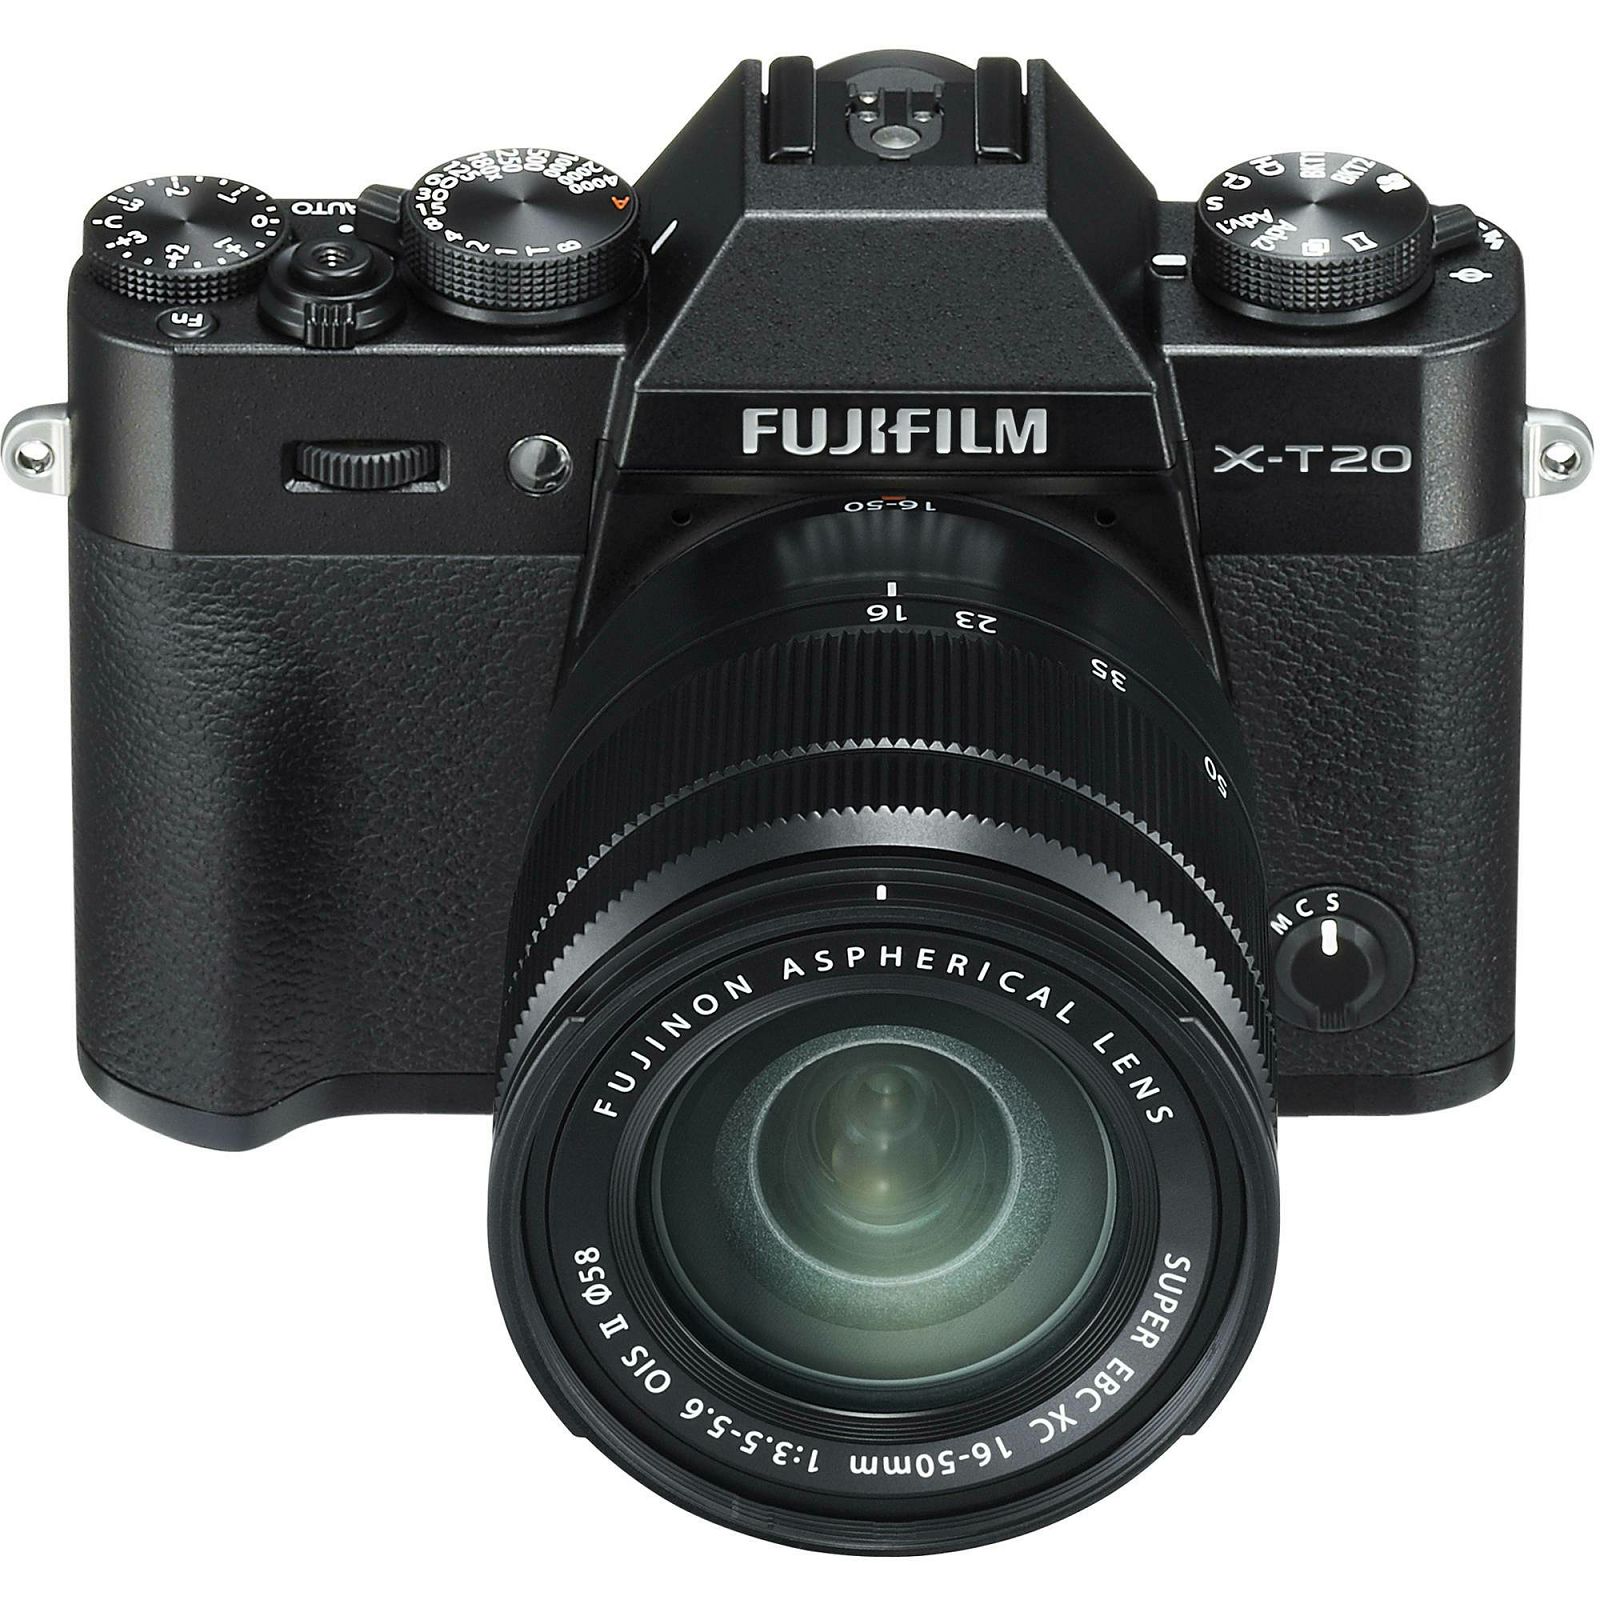 Fujifilm X-T20 + XC 16-50 f3.5-5.6 OIS II Black crni digitalni mirrorless fotoaparat s objektivom 16-50mm Fuji